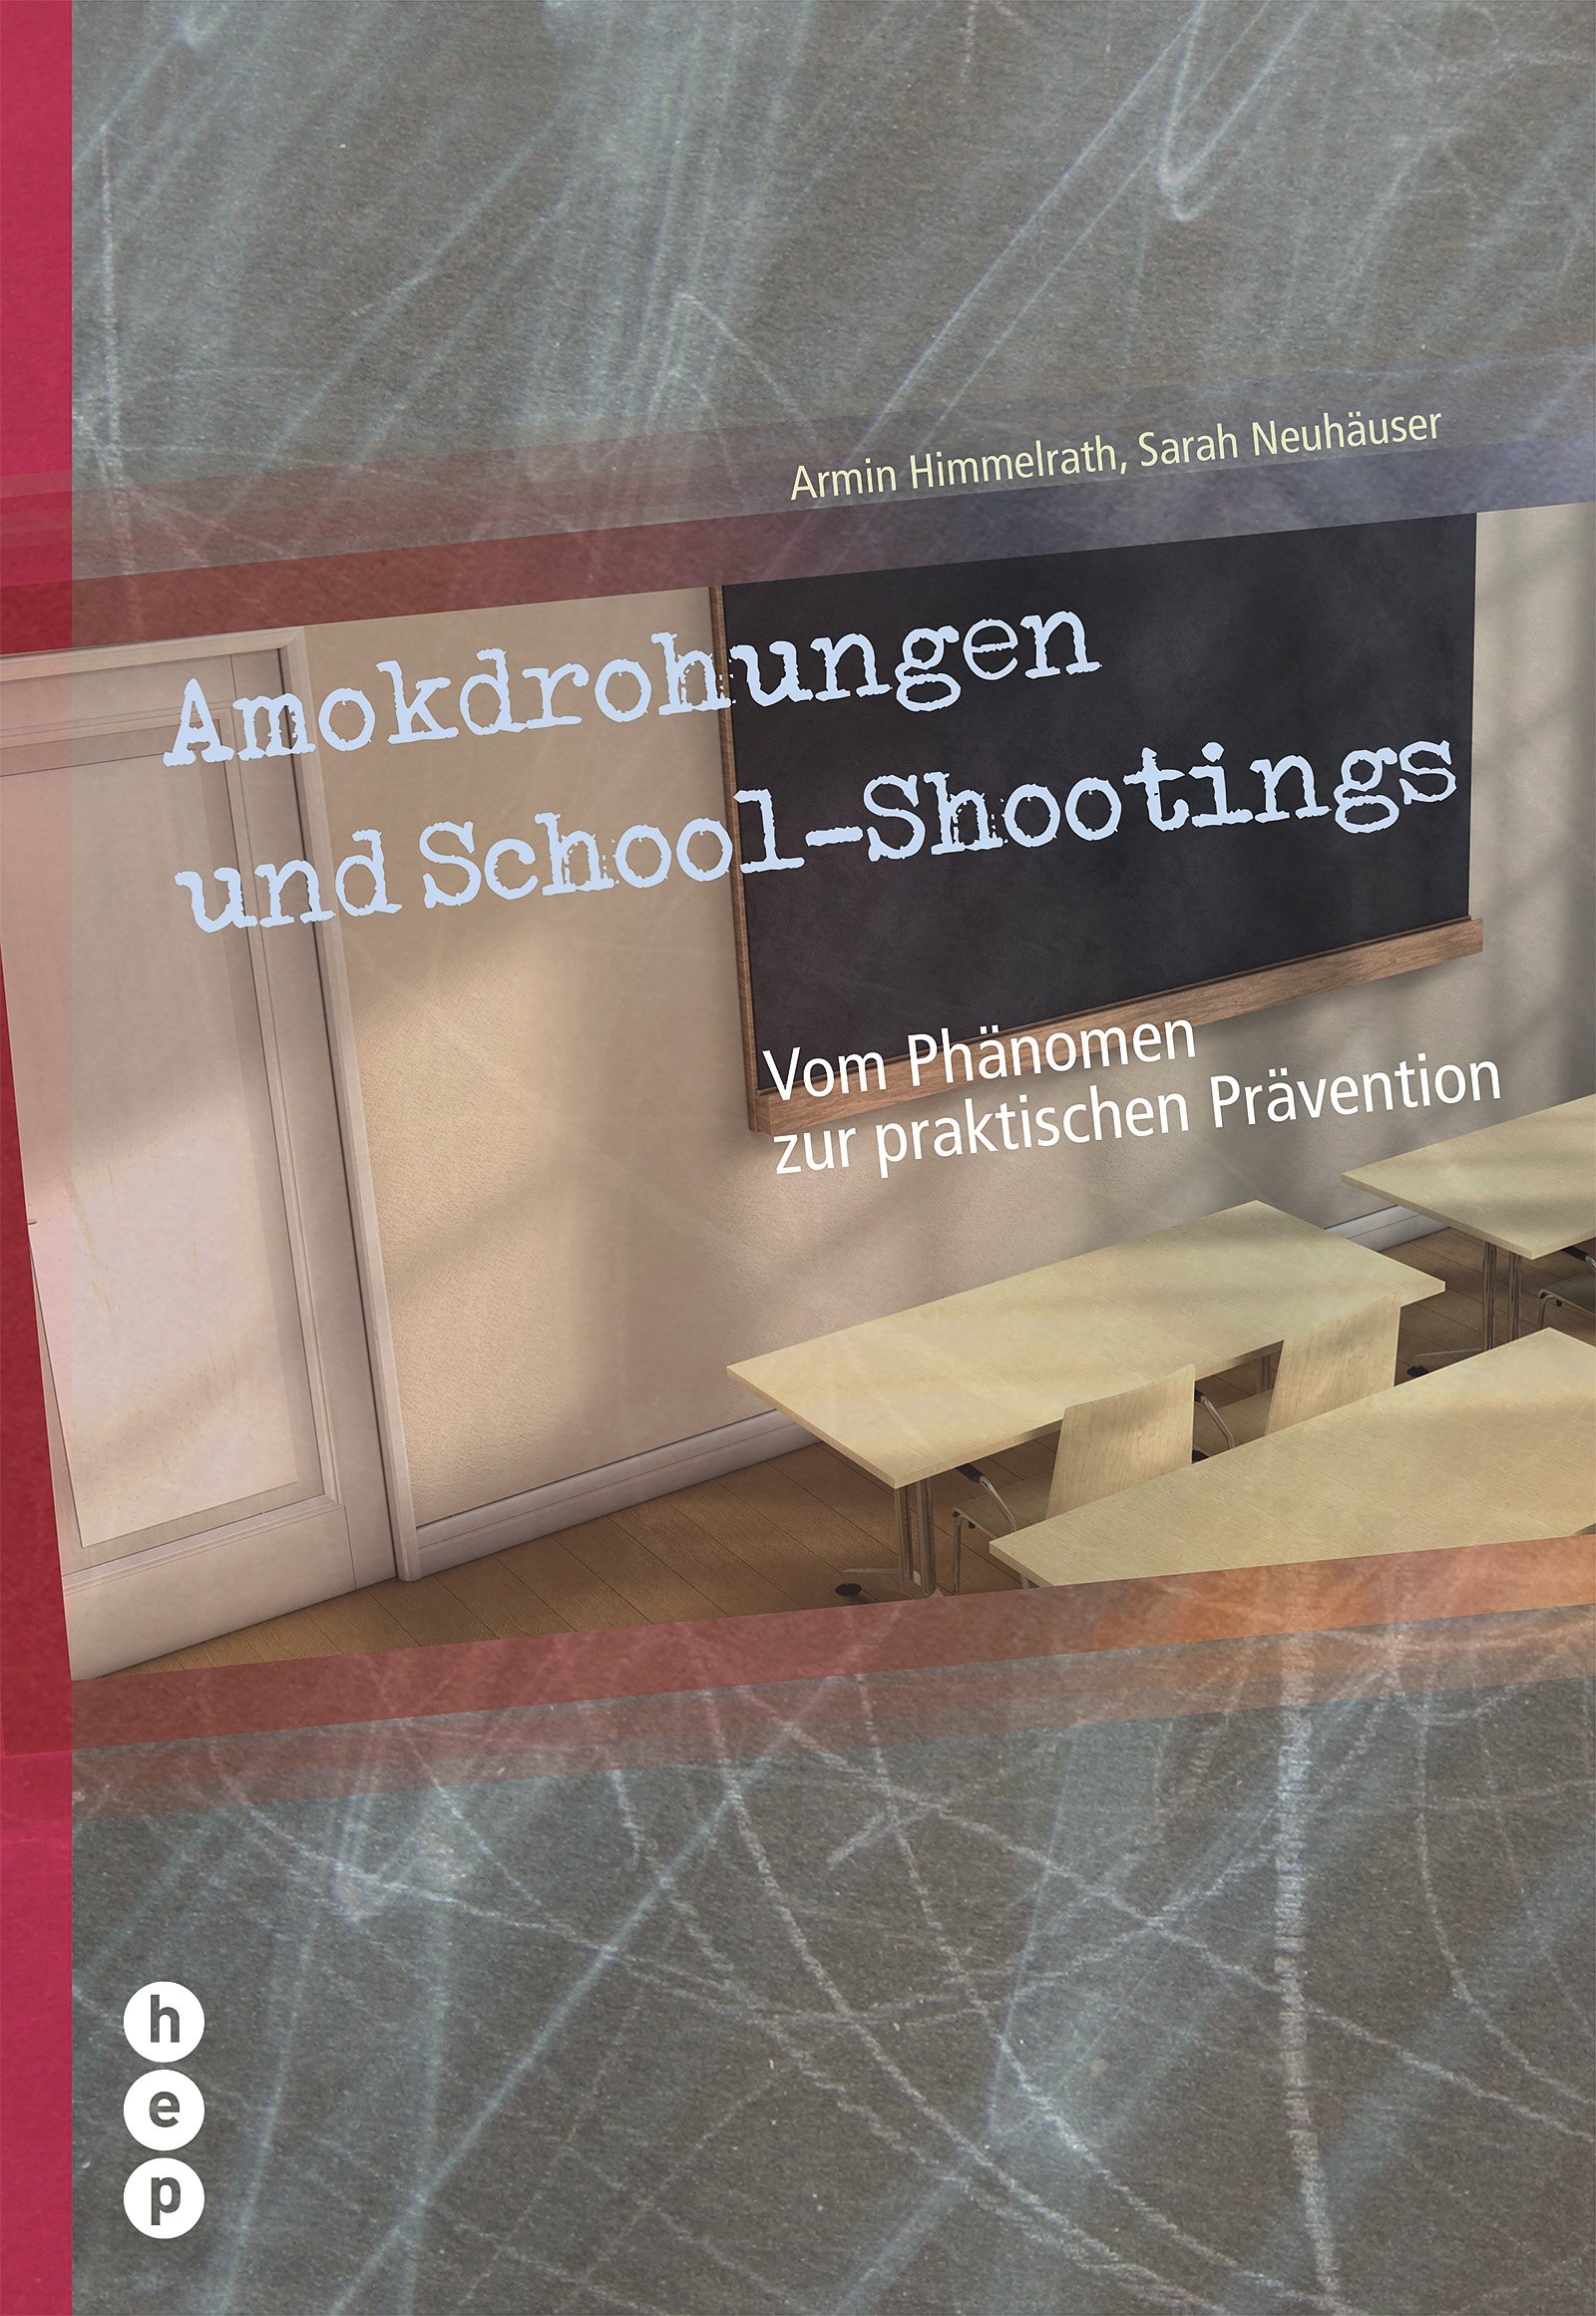 Produktabbildung von Amokdrohungen und School-Shootings